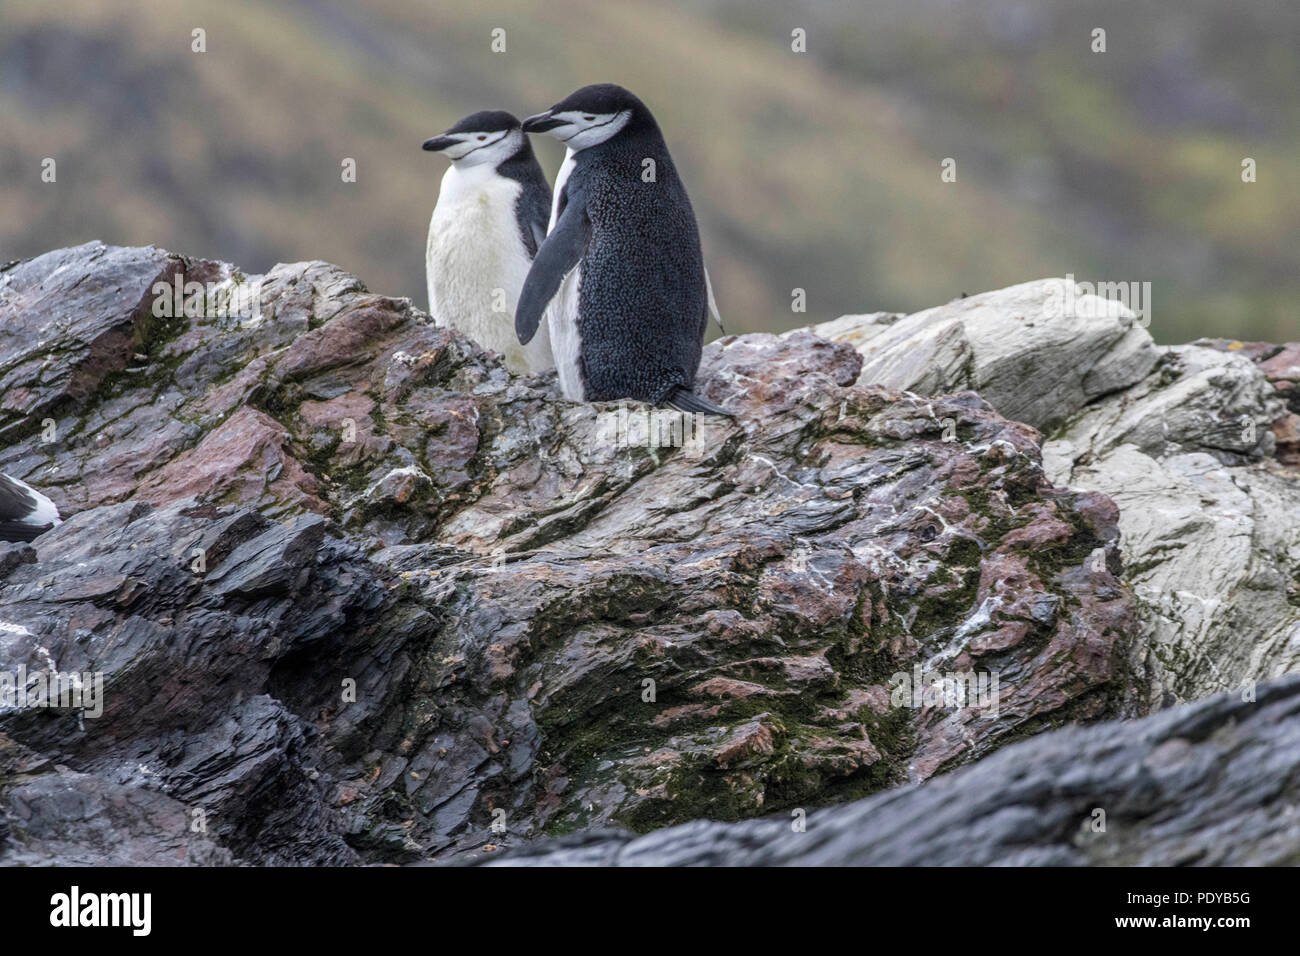 Lone pinguini Chinstrap passeggiate nella neve Foto Stock